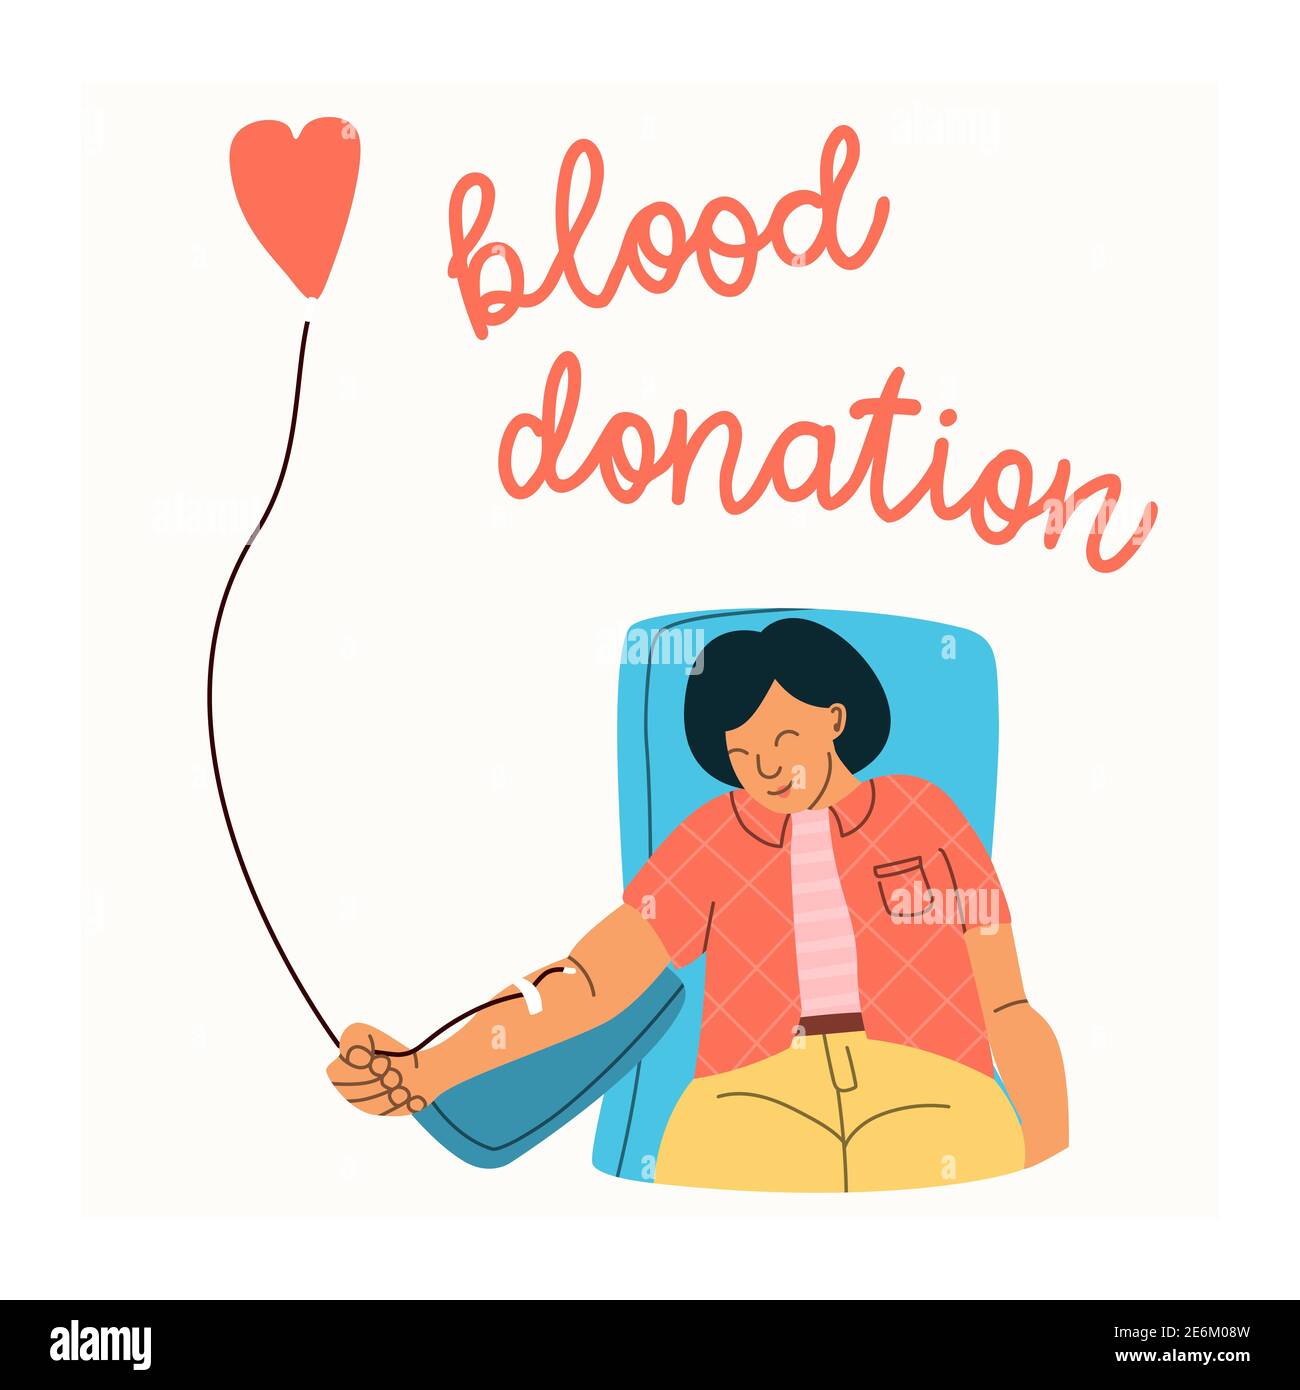 Vektor-Illustration einer Frau freiwillig spendet Blut. Konzept der Blutspende. Flacher Trendcharakter. Stock Vektor